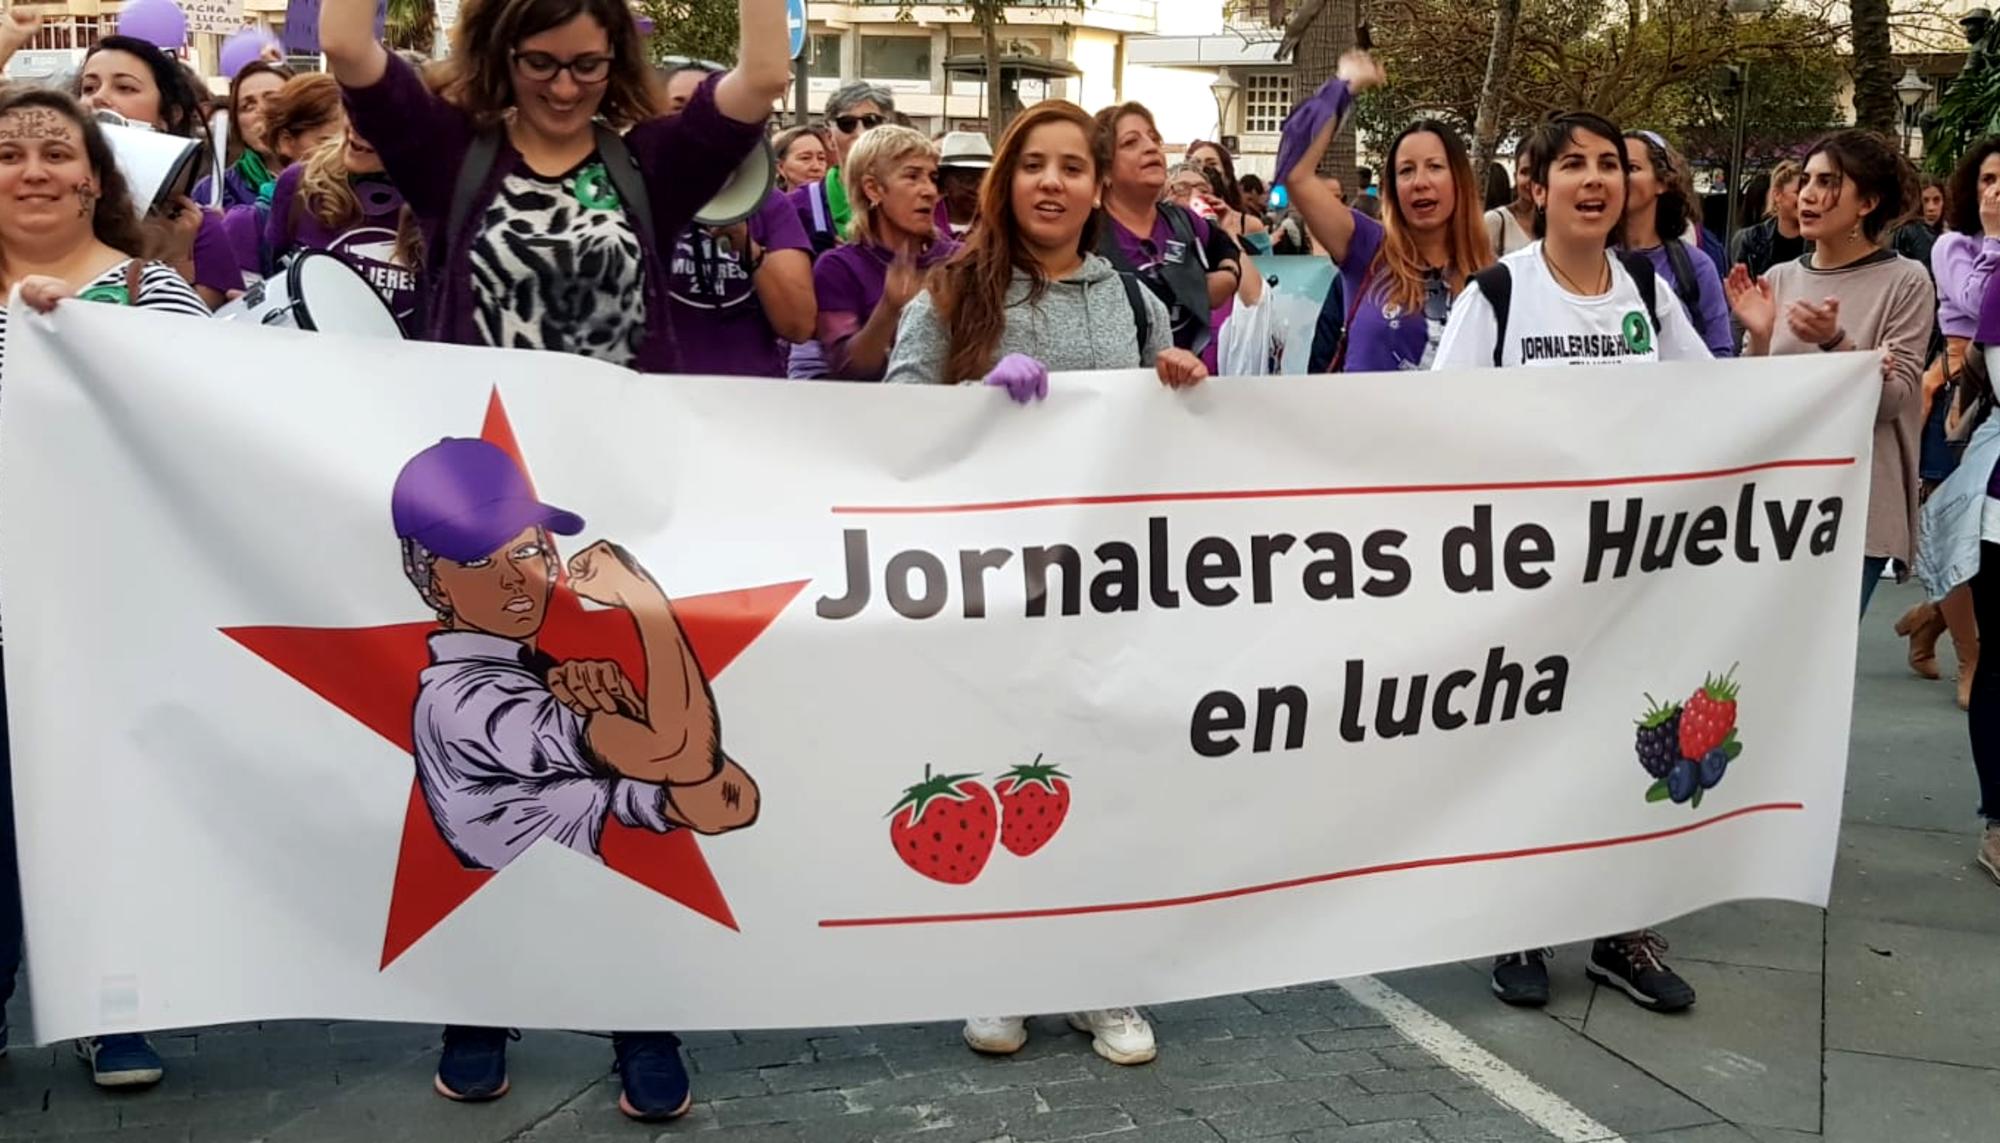 Movilización del colectivo Jornaleras de Huelva en Lucha